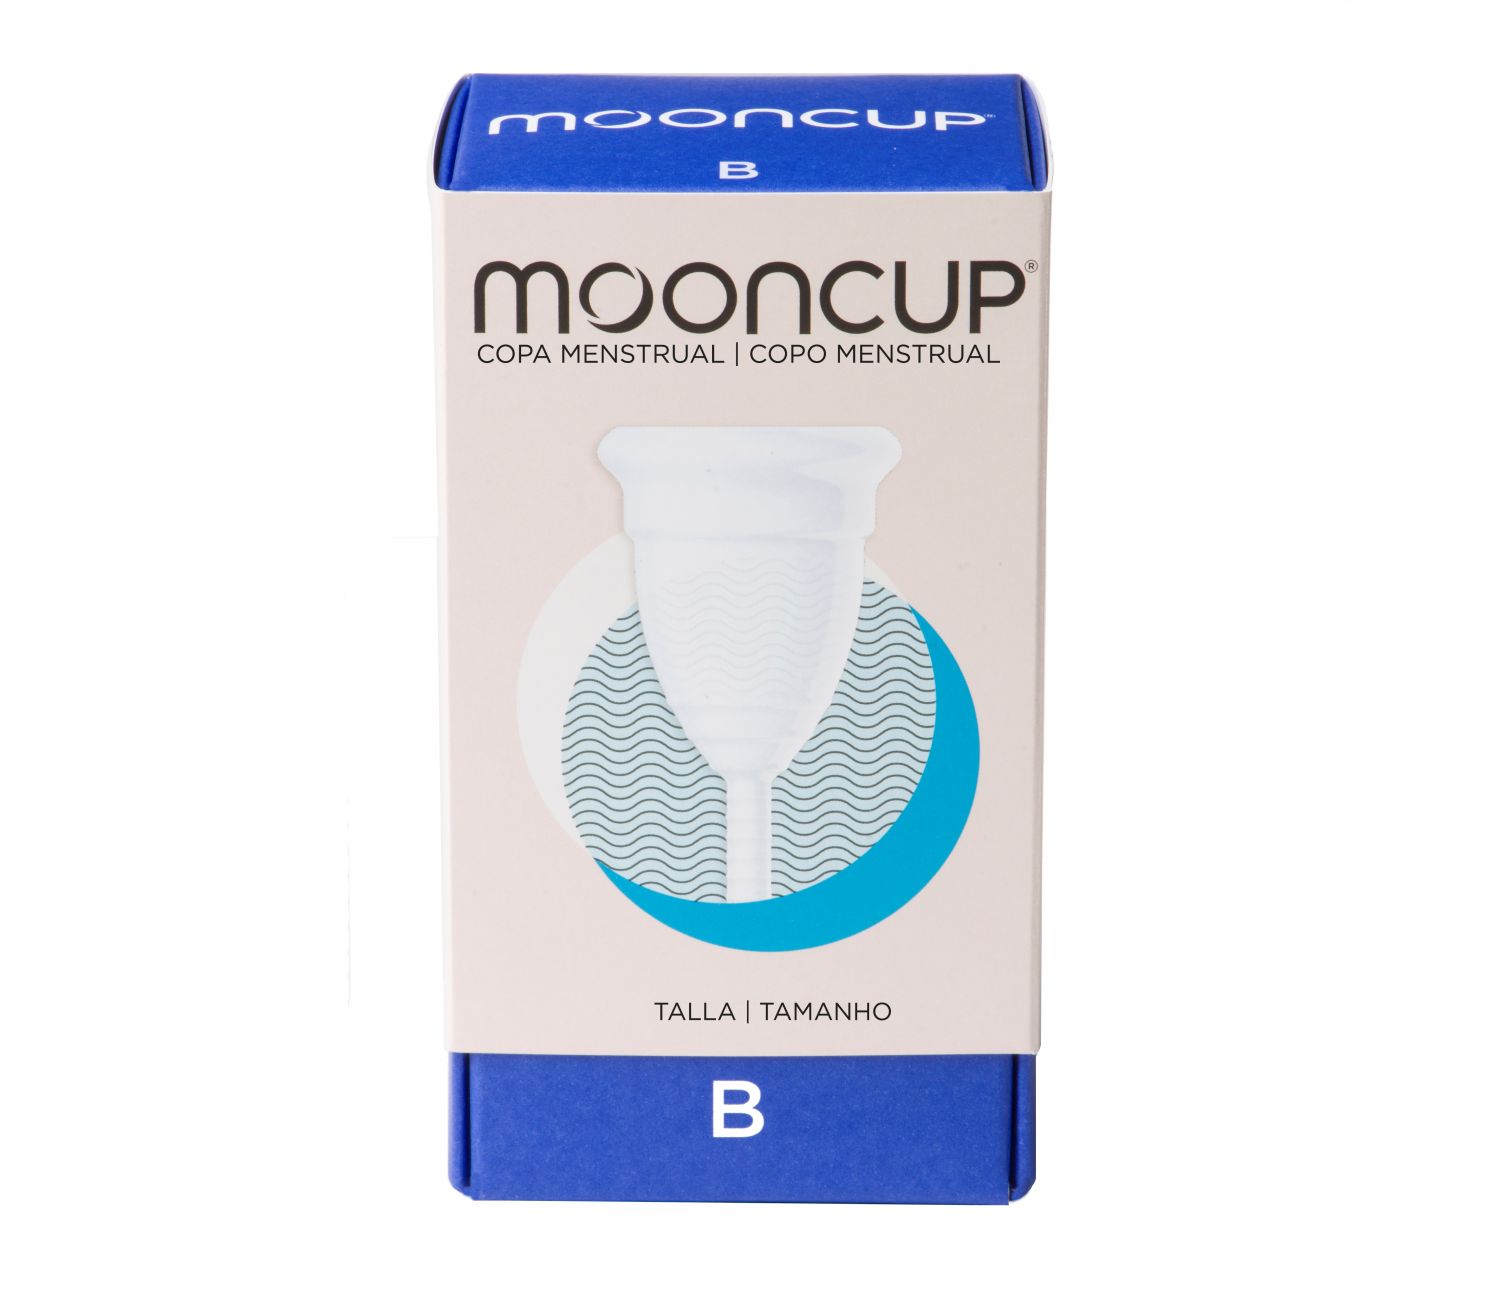 Copa menstrual Mooncup